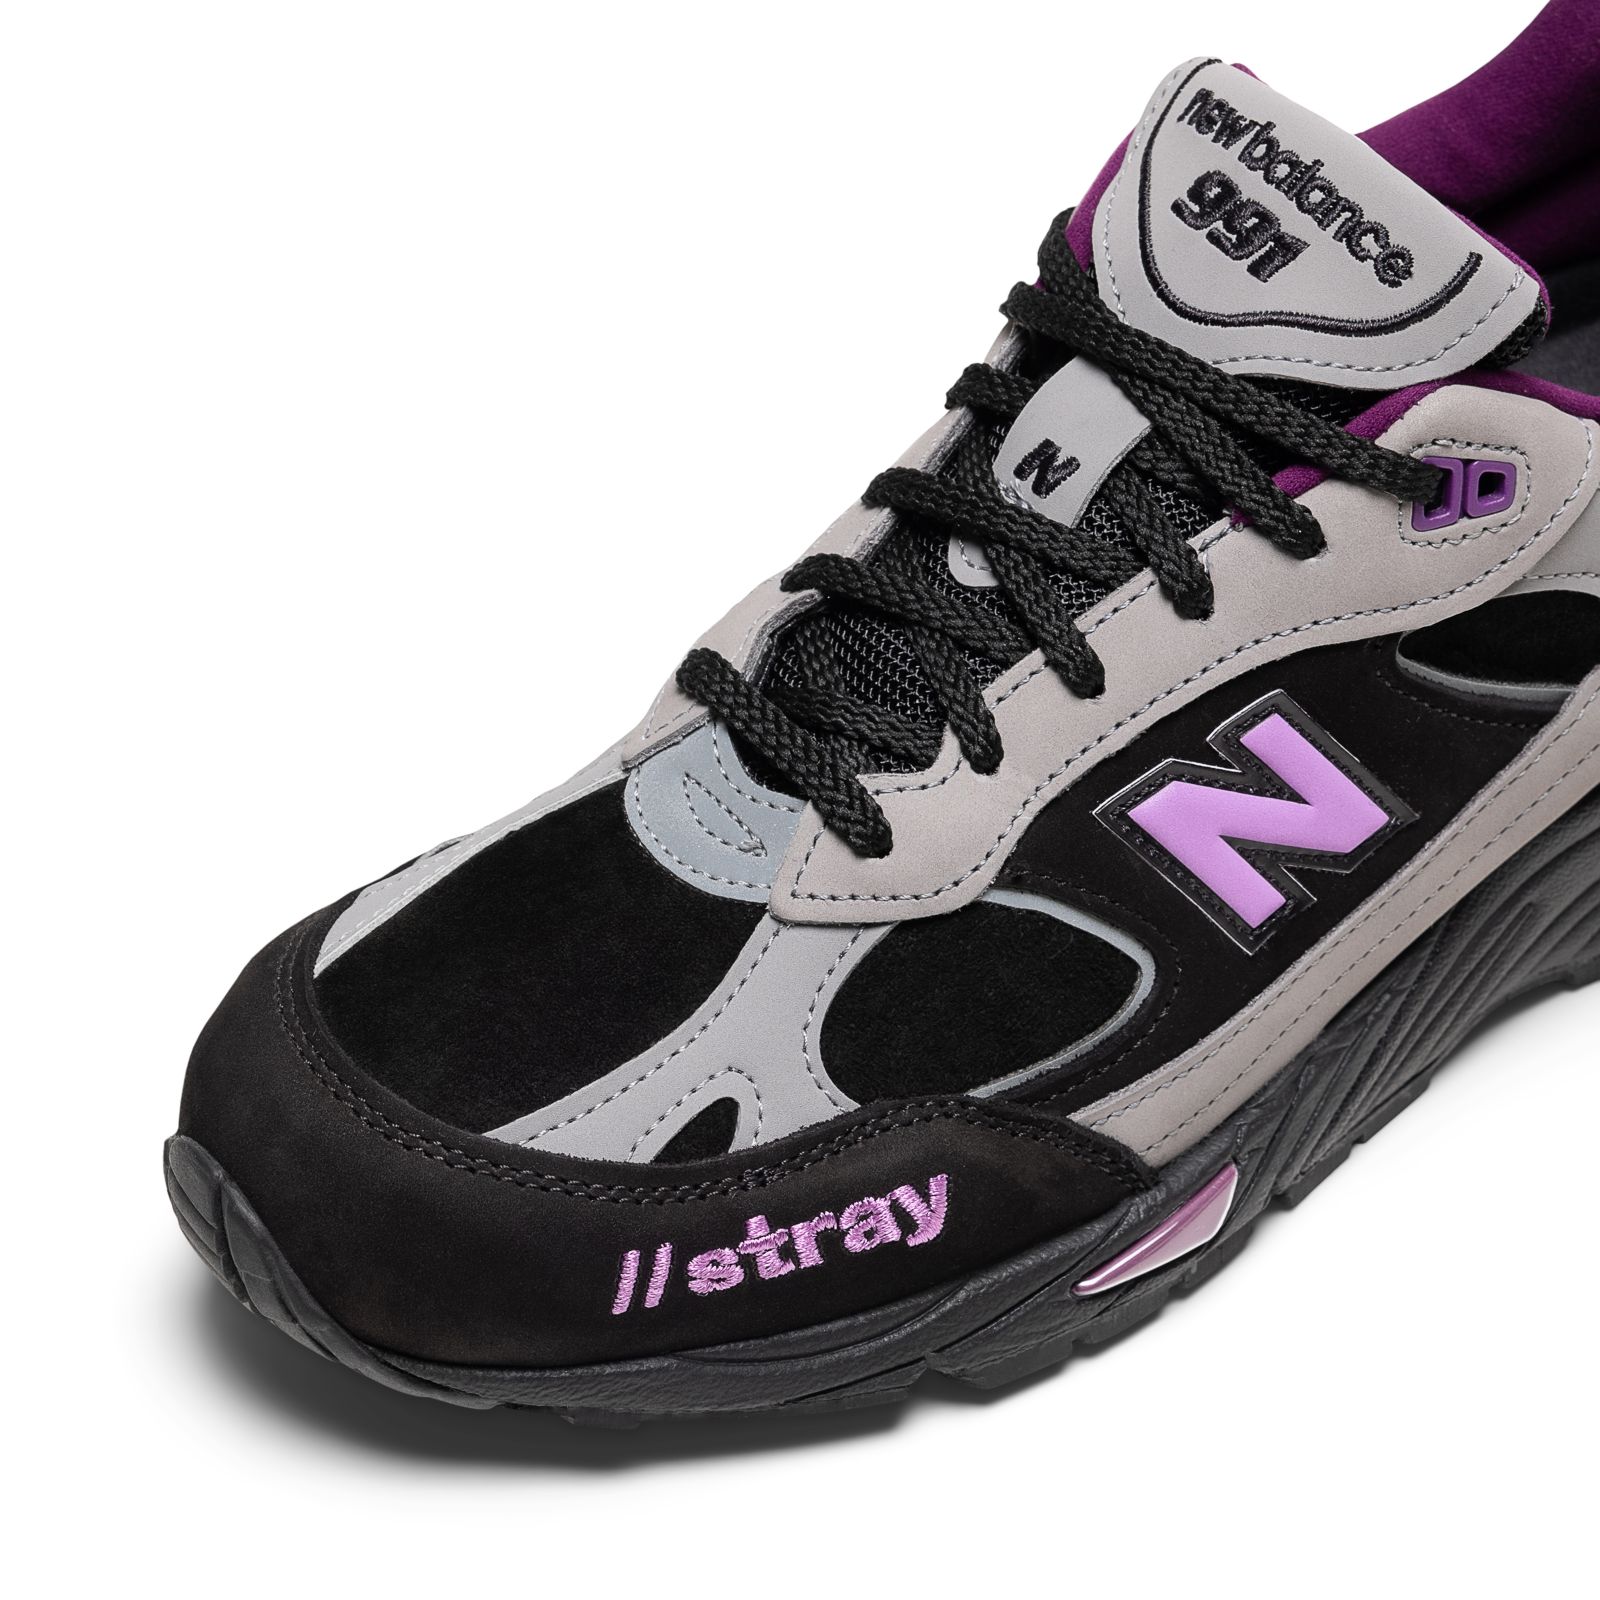 Stray Rats x New Balance 991 黒紫スニーカー 直販ストア www.m